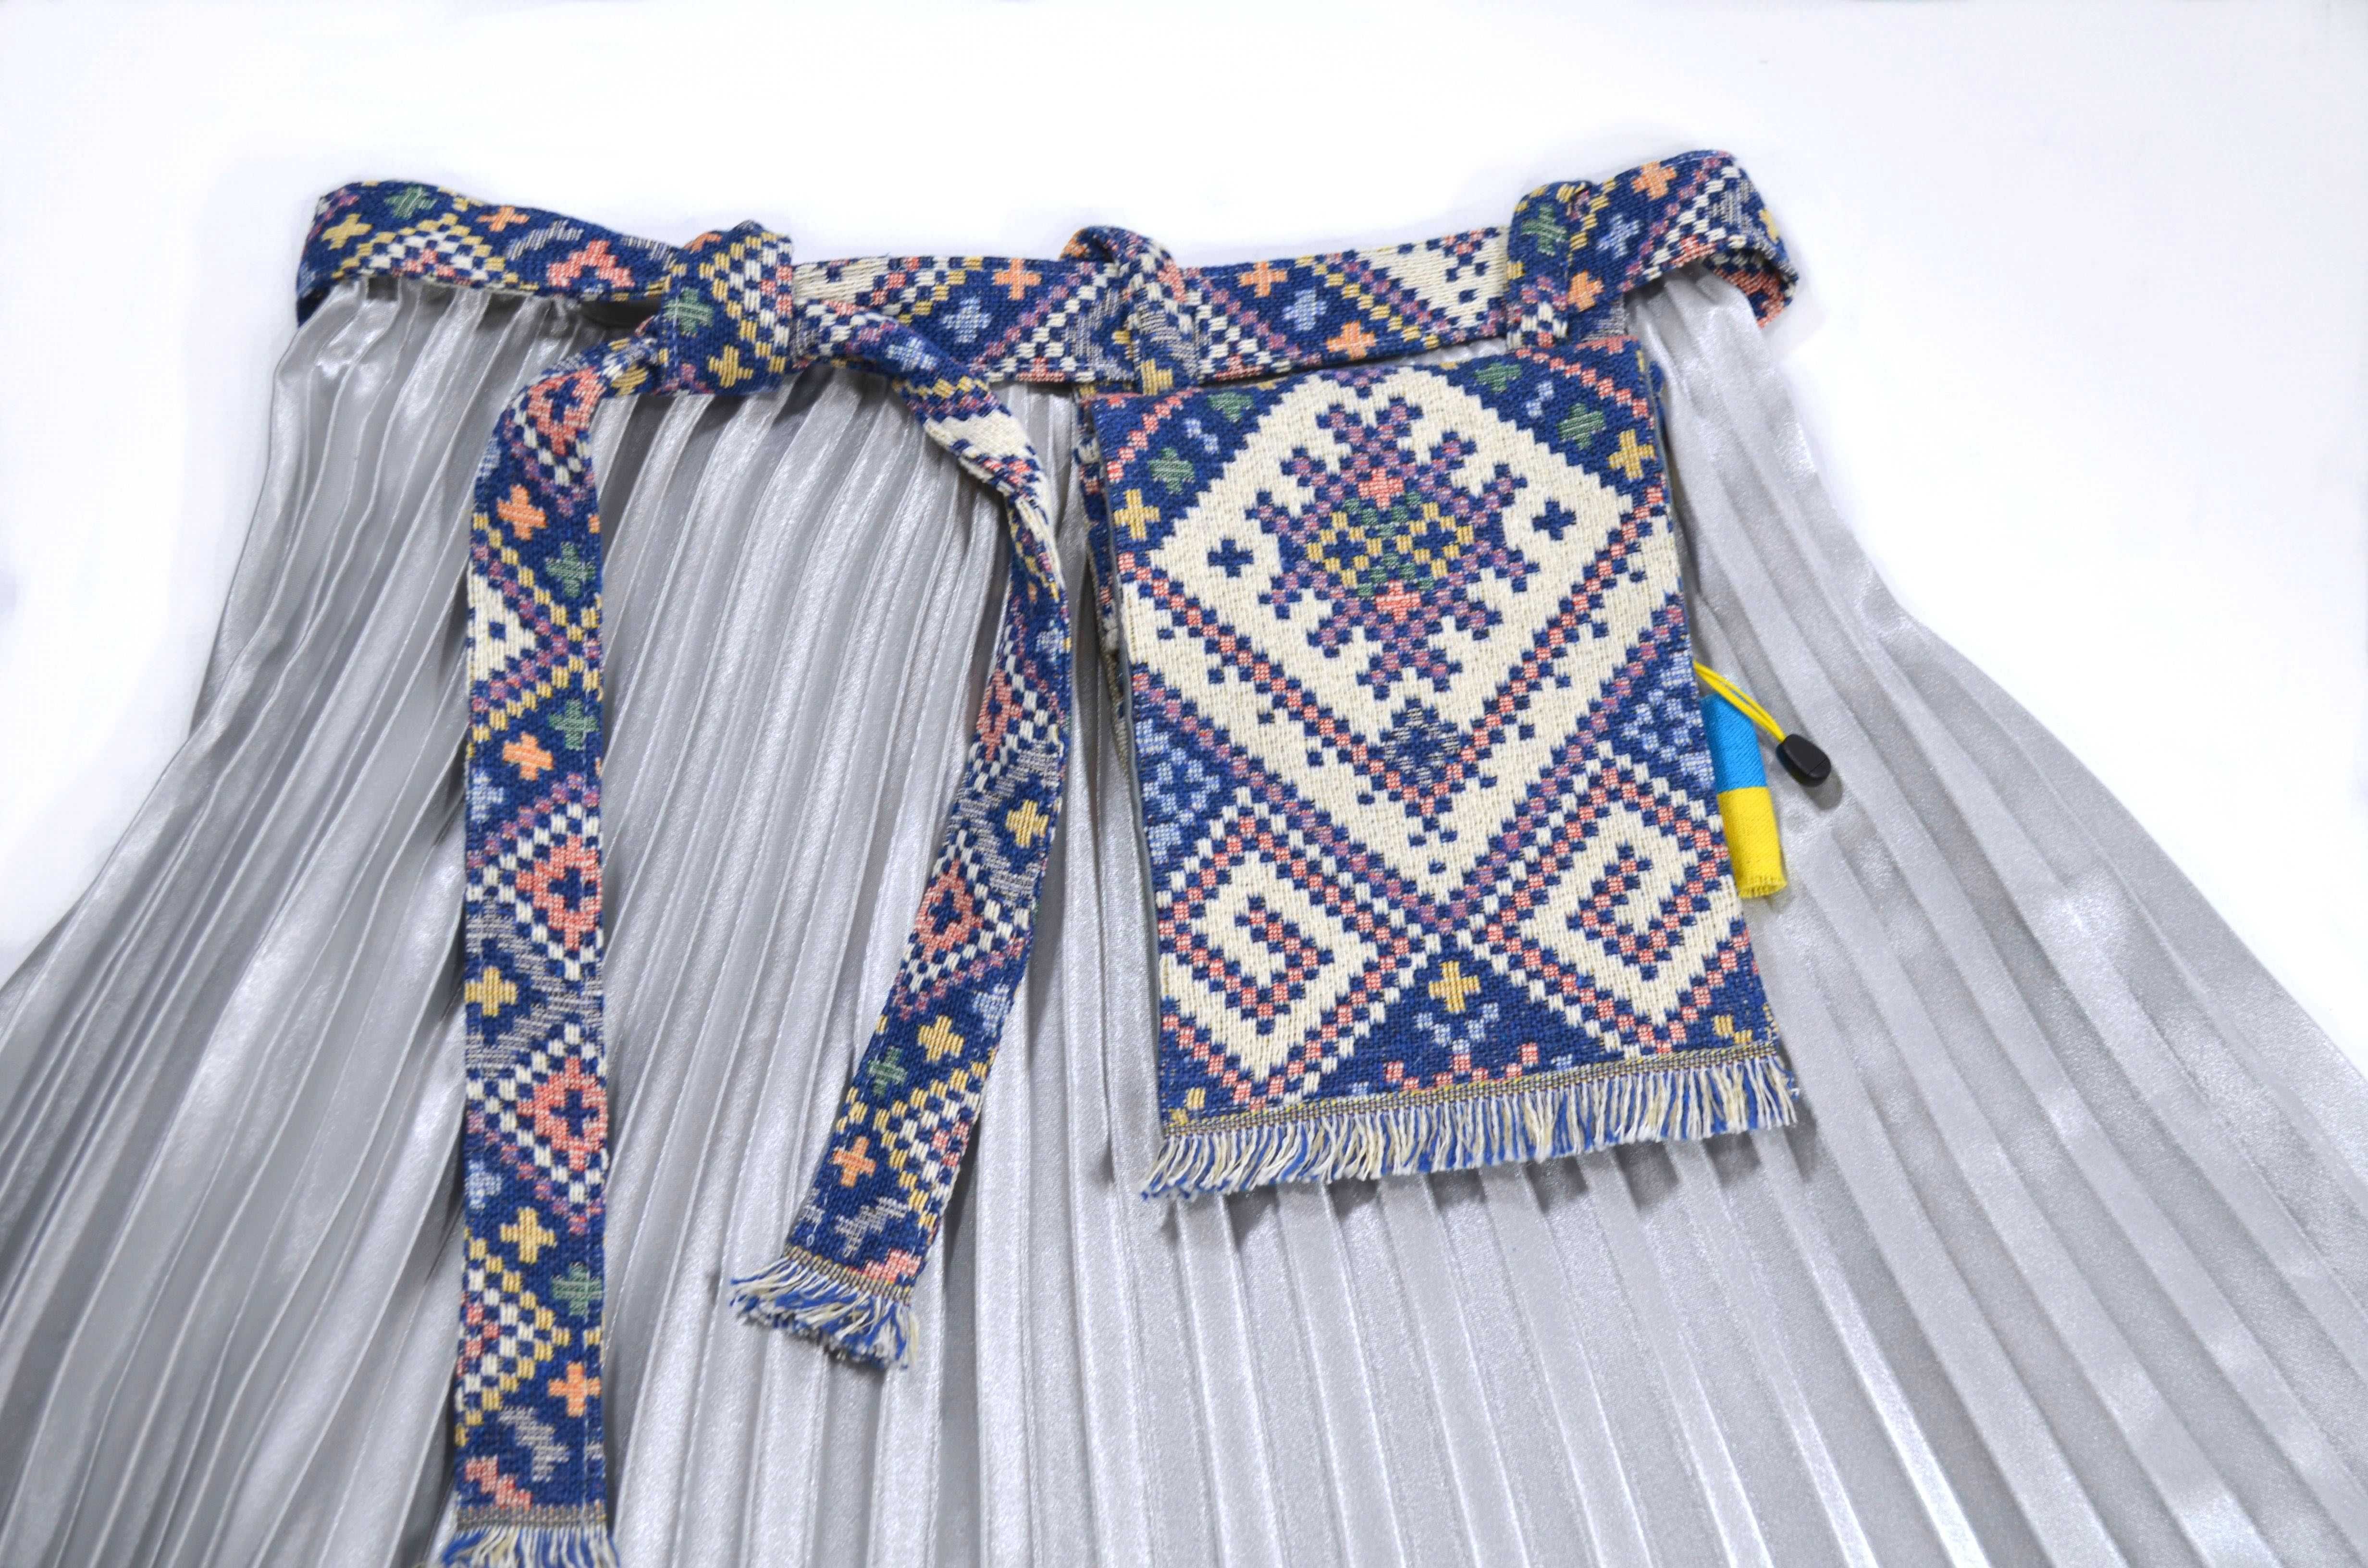 Текстильний пояс ручної роботи в стилістиці етно.